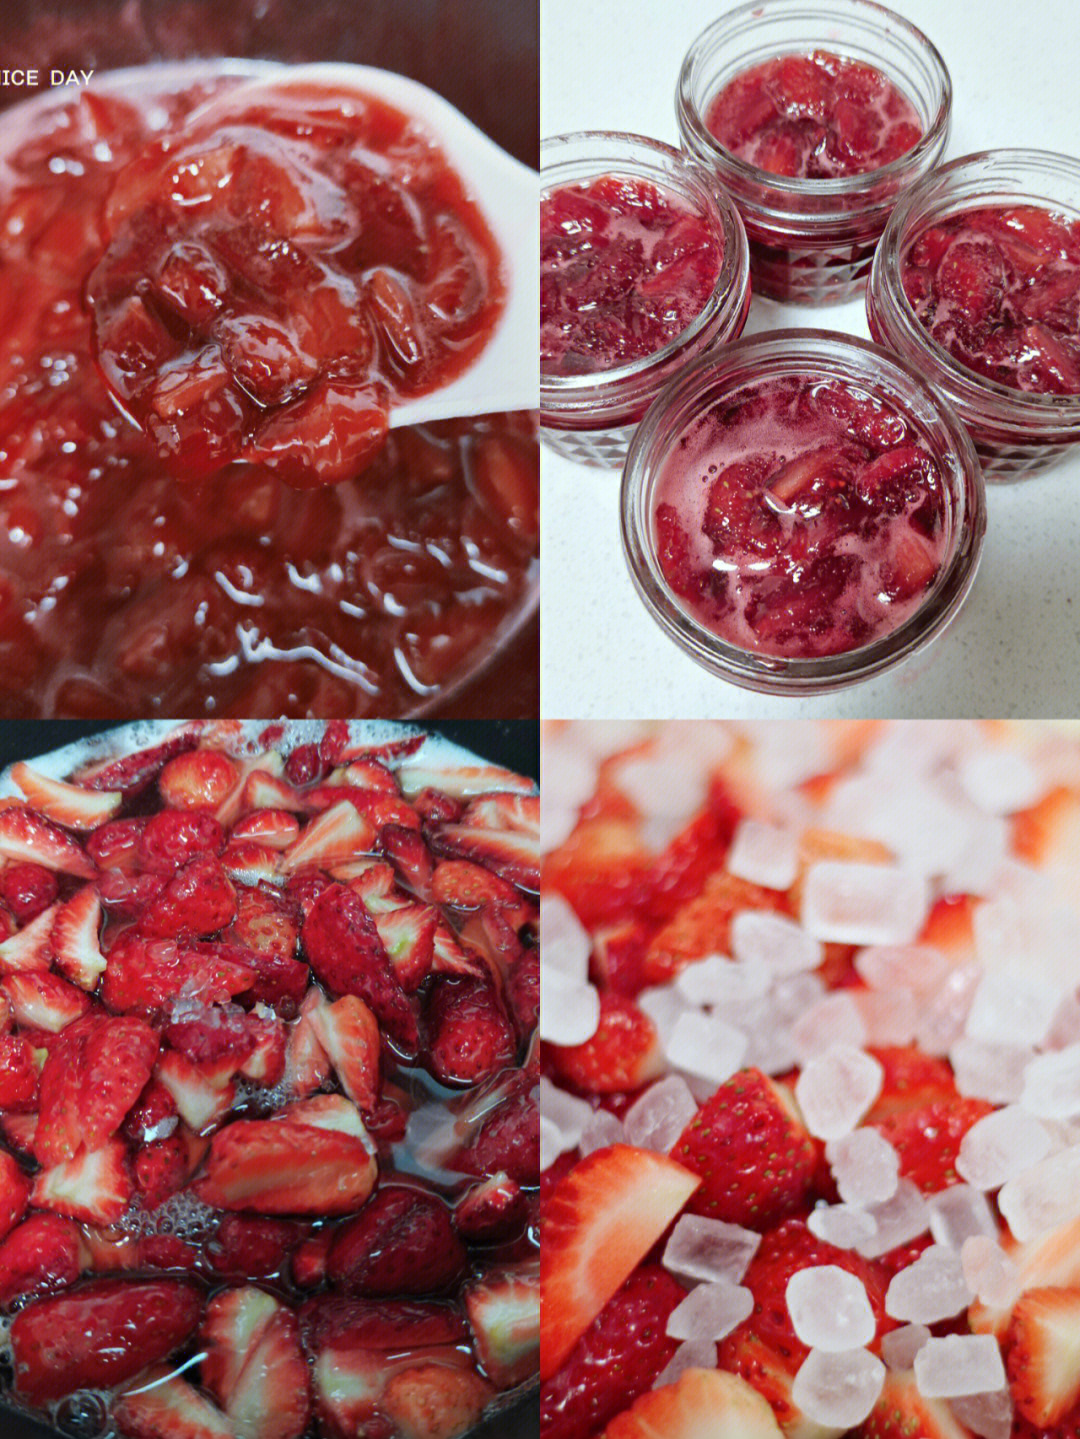 春天草莓季,草莓超便宜,果断草莓酱做起来做法很简单草莓500g冰糖250g